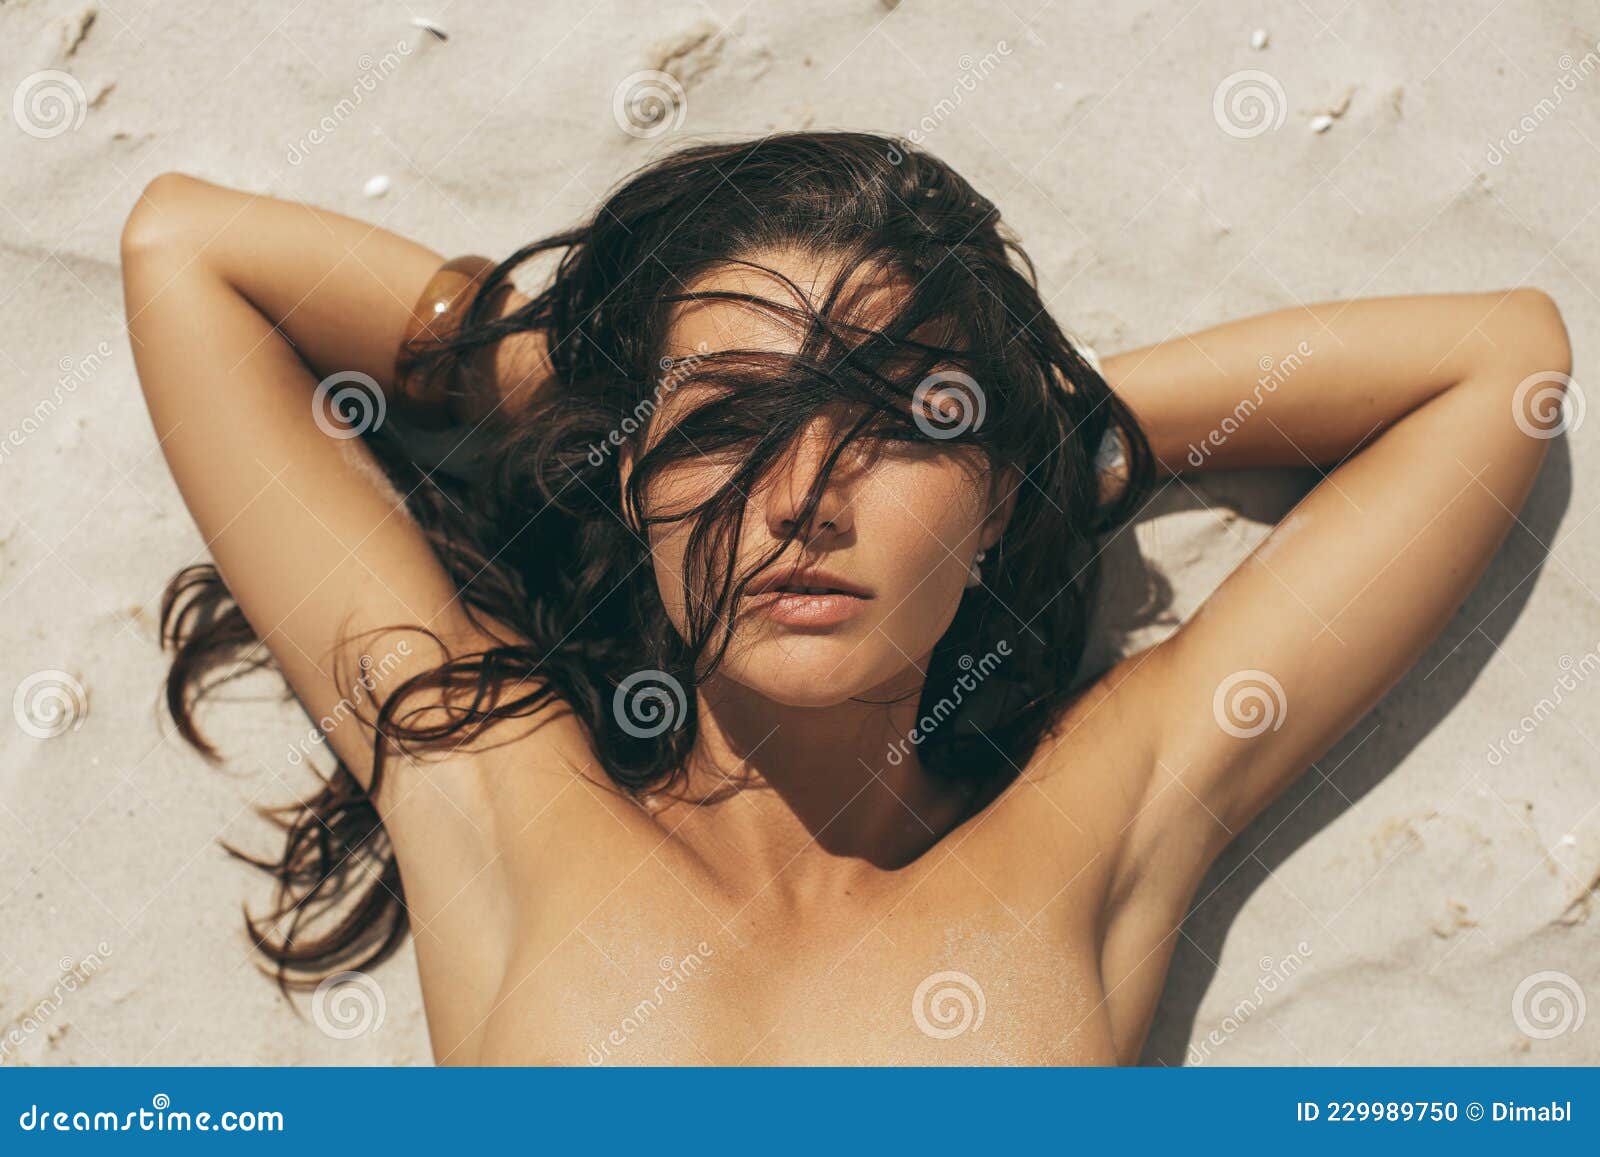 christine bowerman share nude beach close up photos